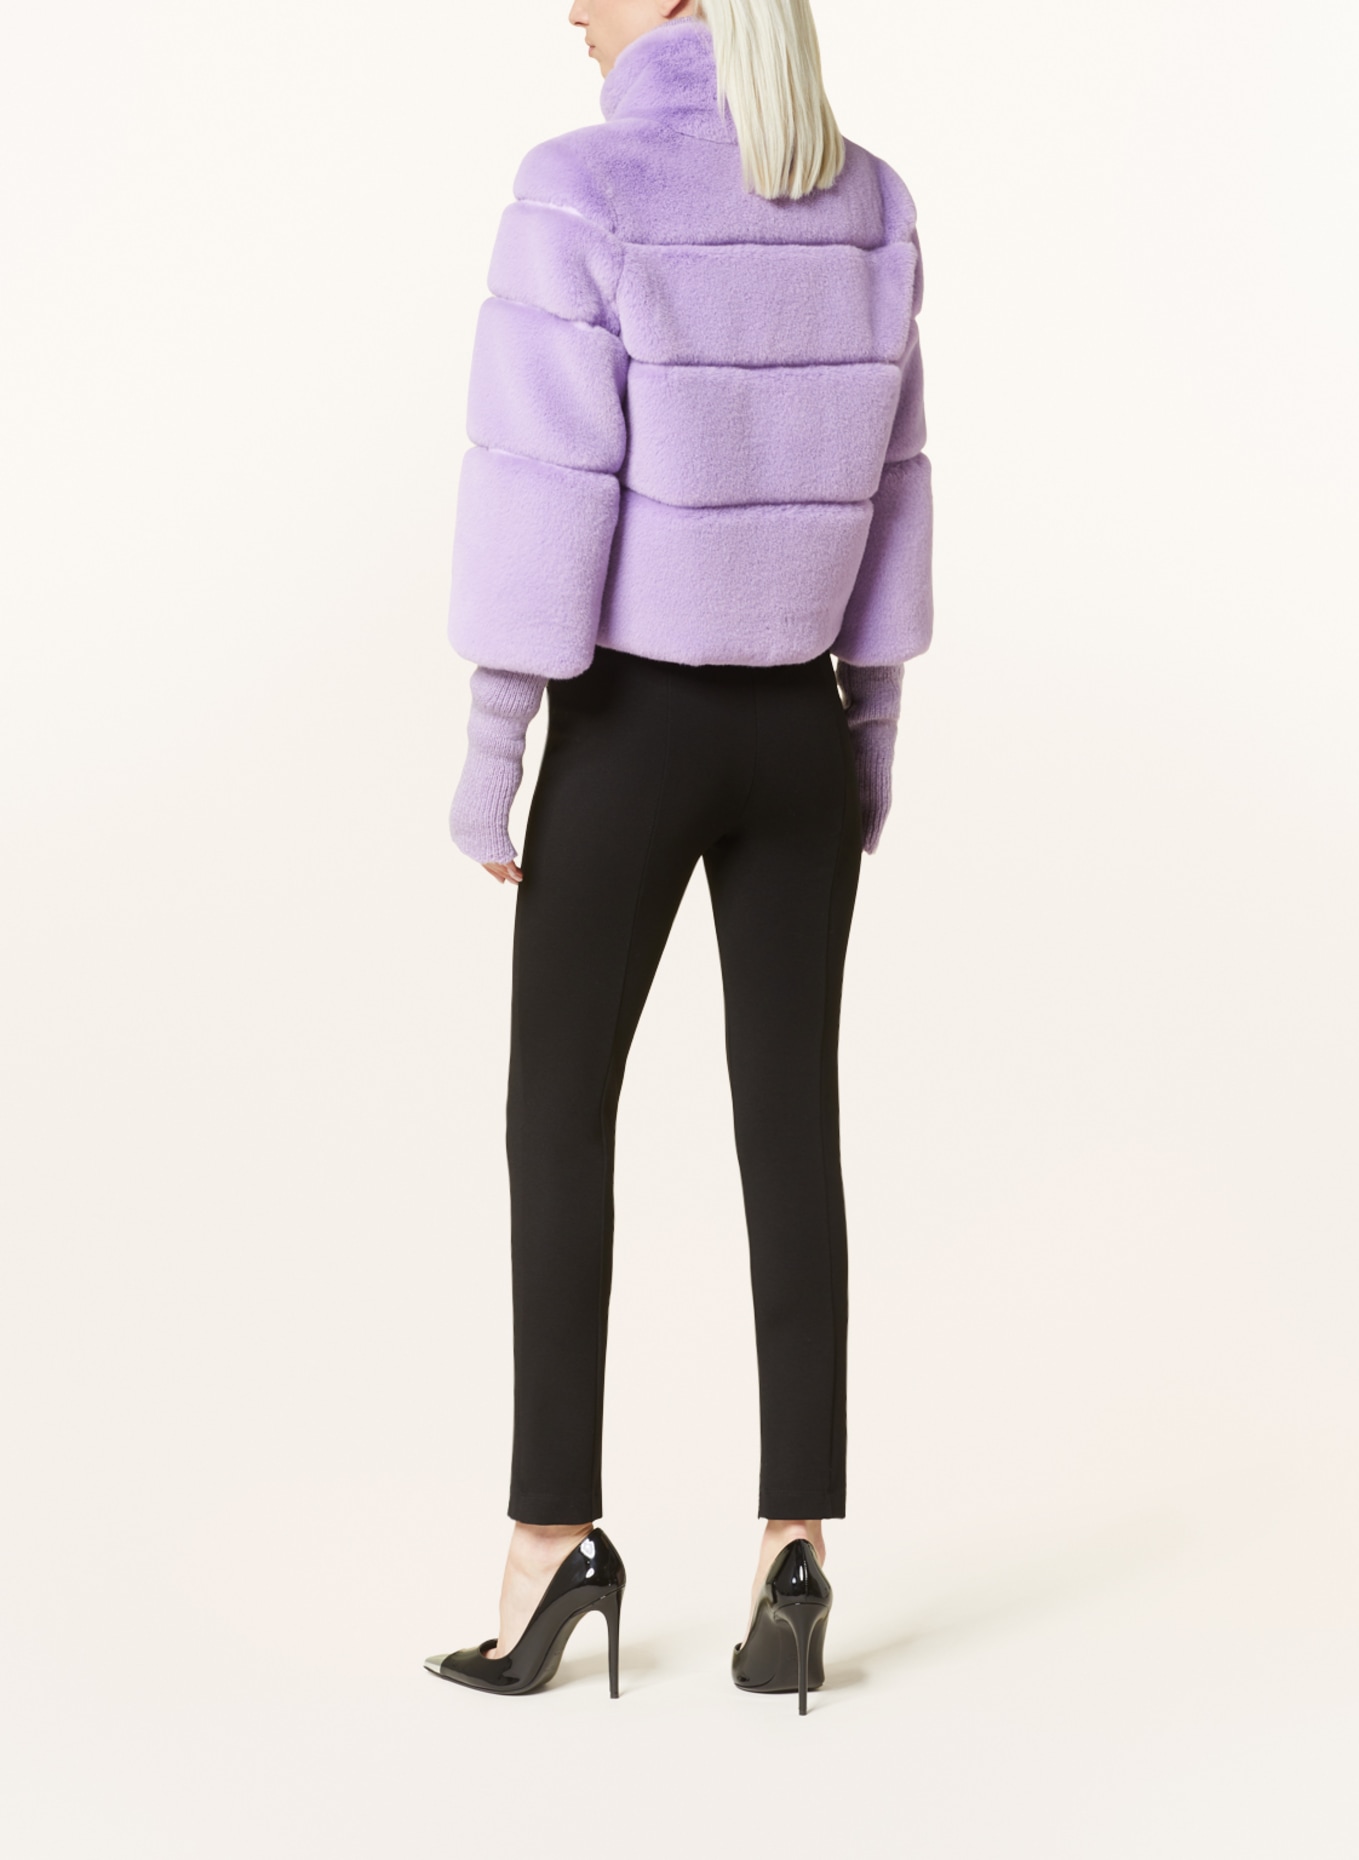 PATRIZIA PEPE Faux fur jacket, Color: LIGHT PURPLE (Image 3)